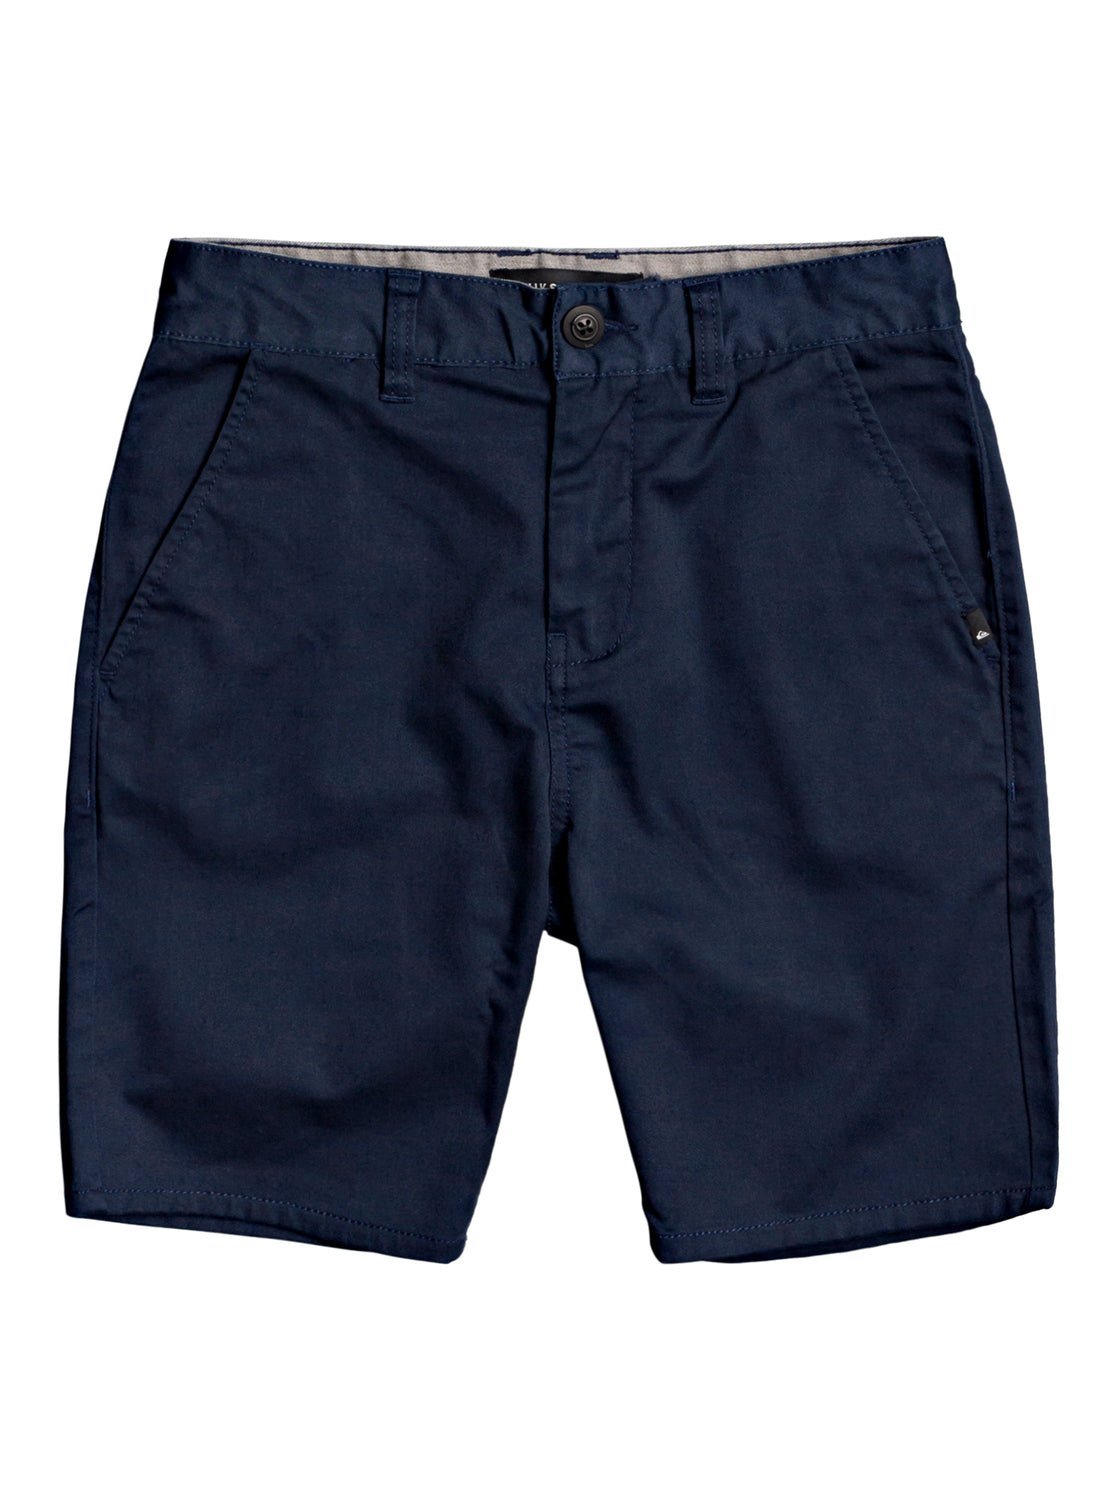 Boys 8-16 New Everyday Union Stretch Chino Shorts - Navy Blazer ...